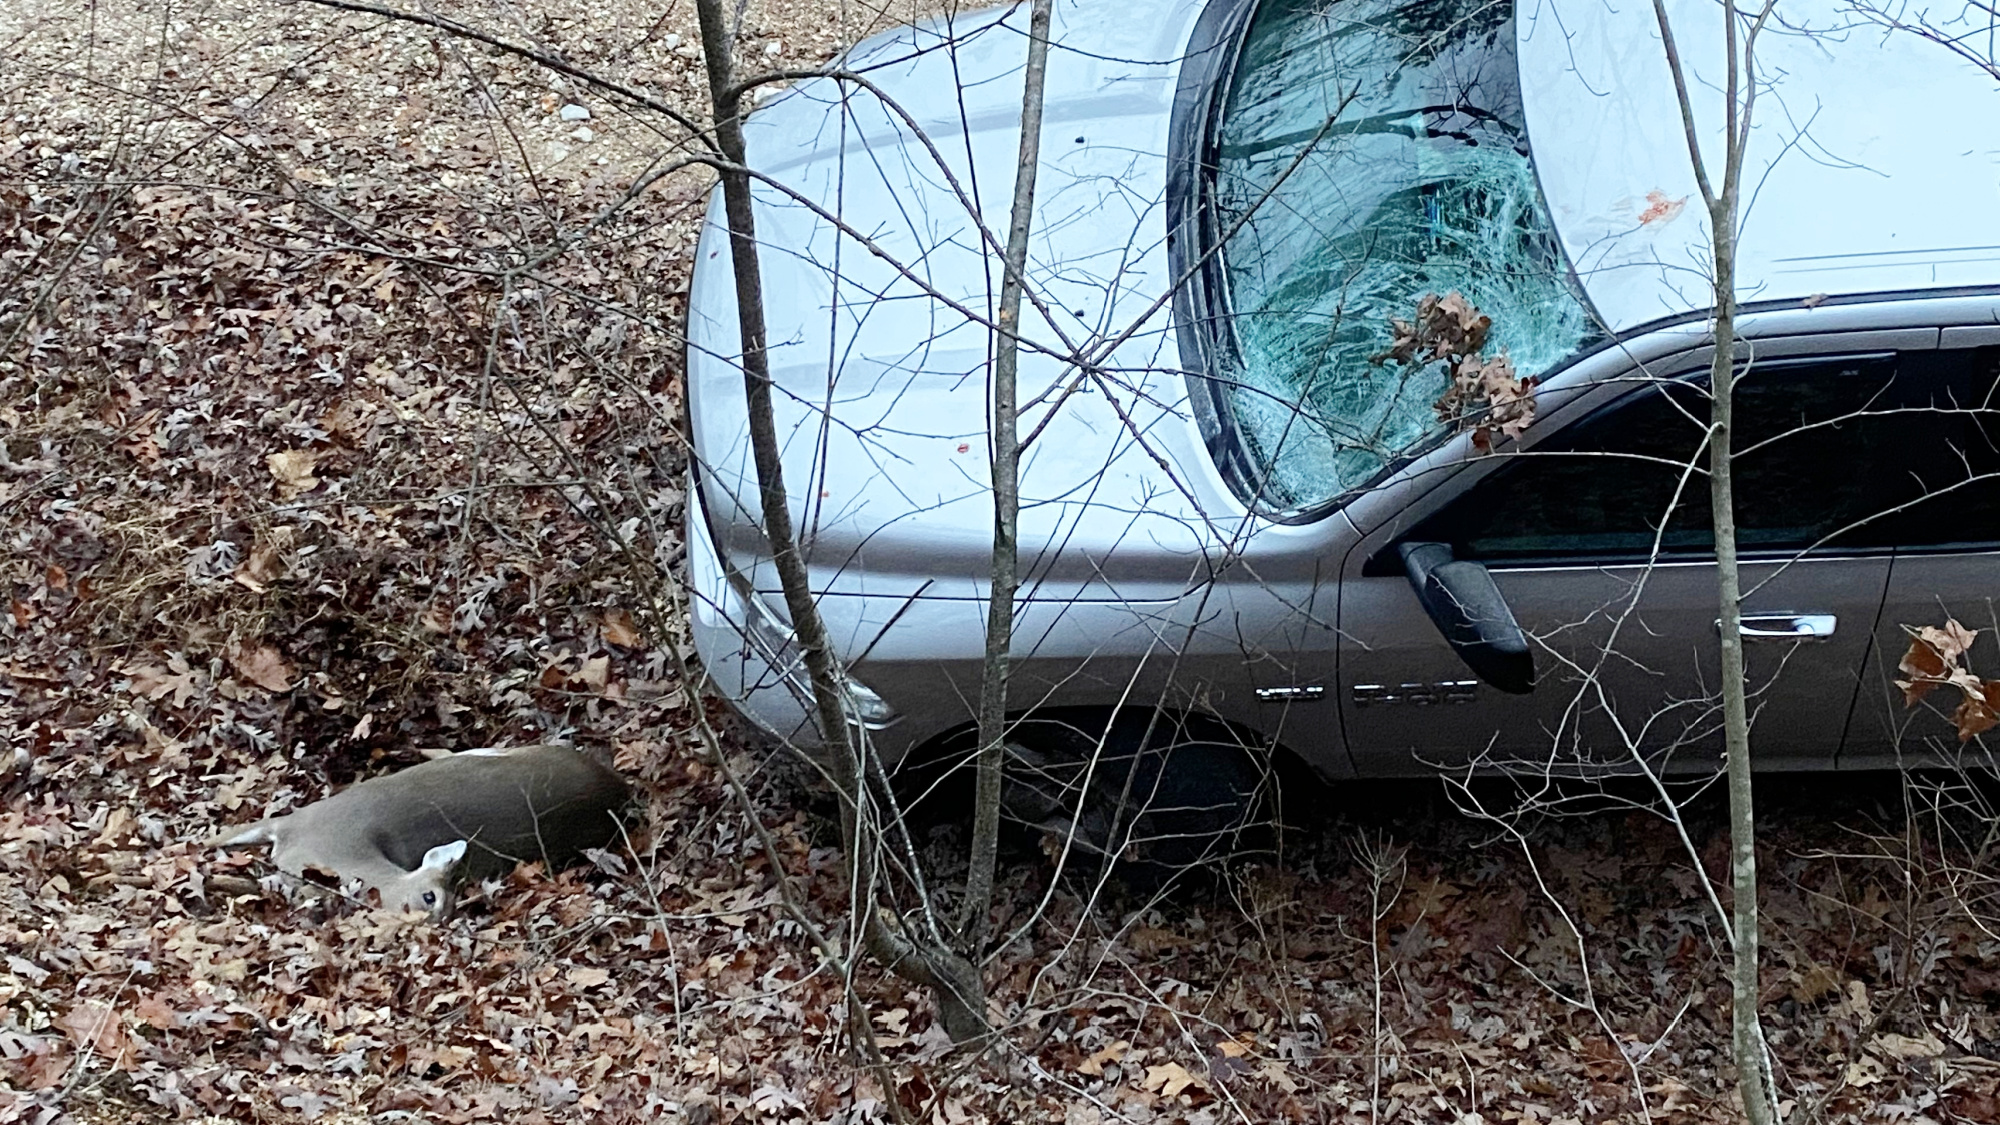 doe lies on ground next to truck with broken windshield